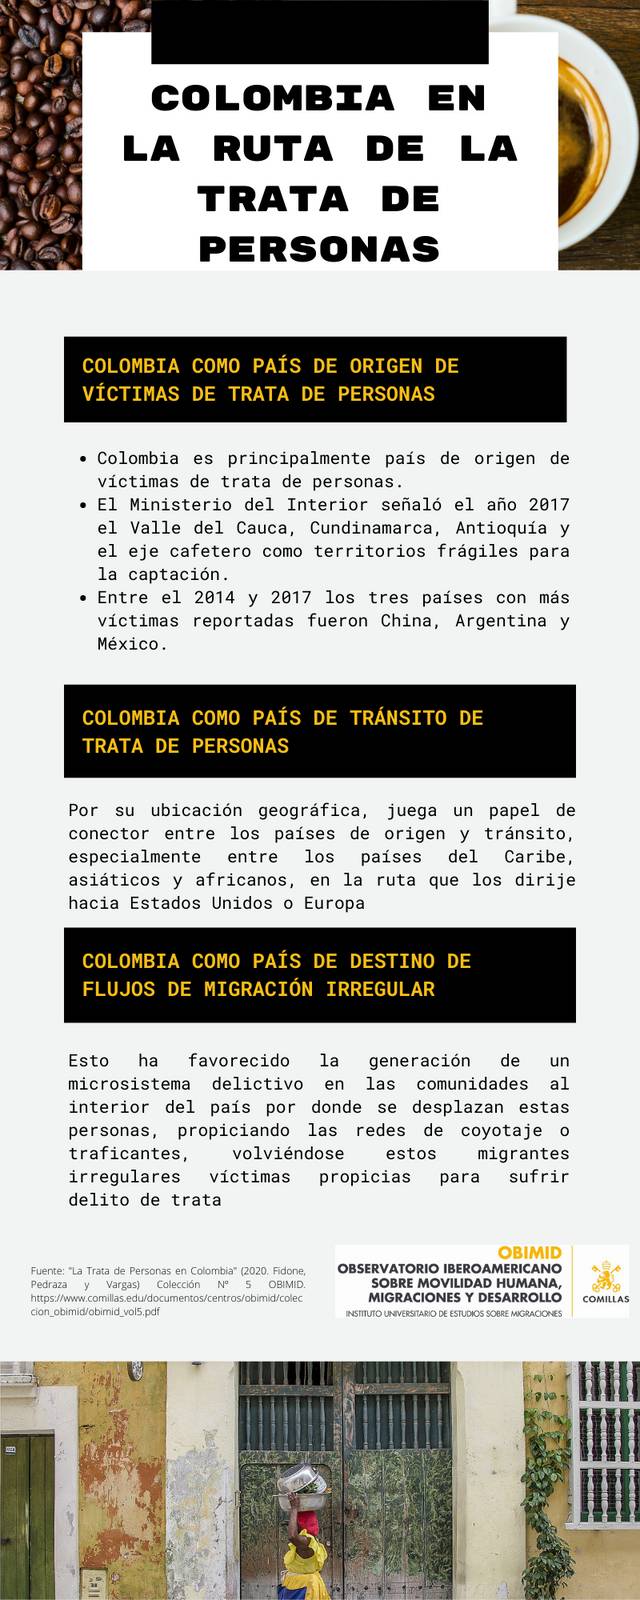 Trata de personas en Colombia